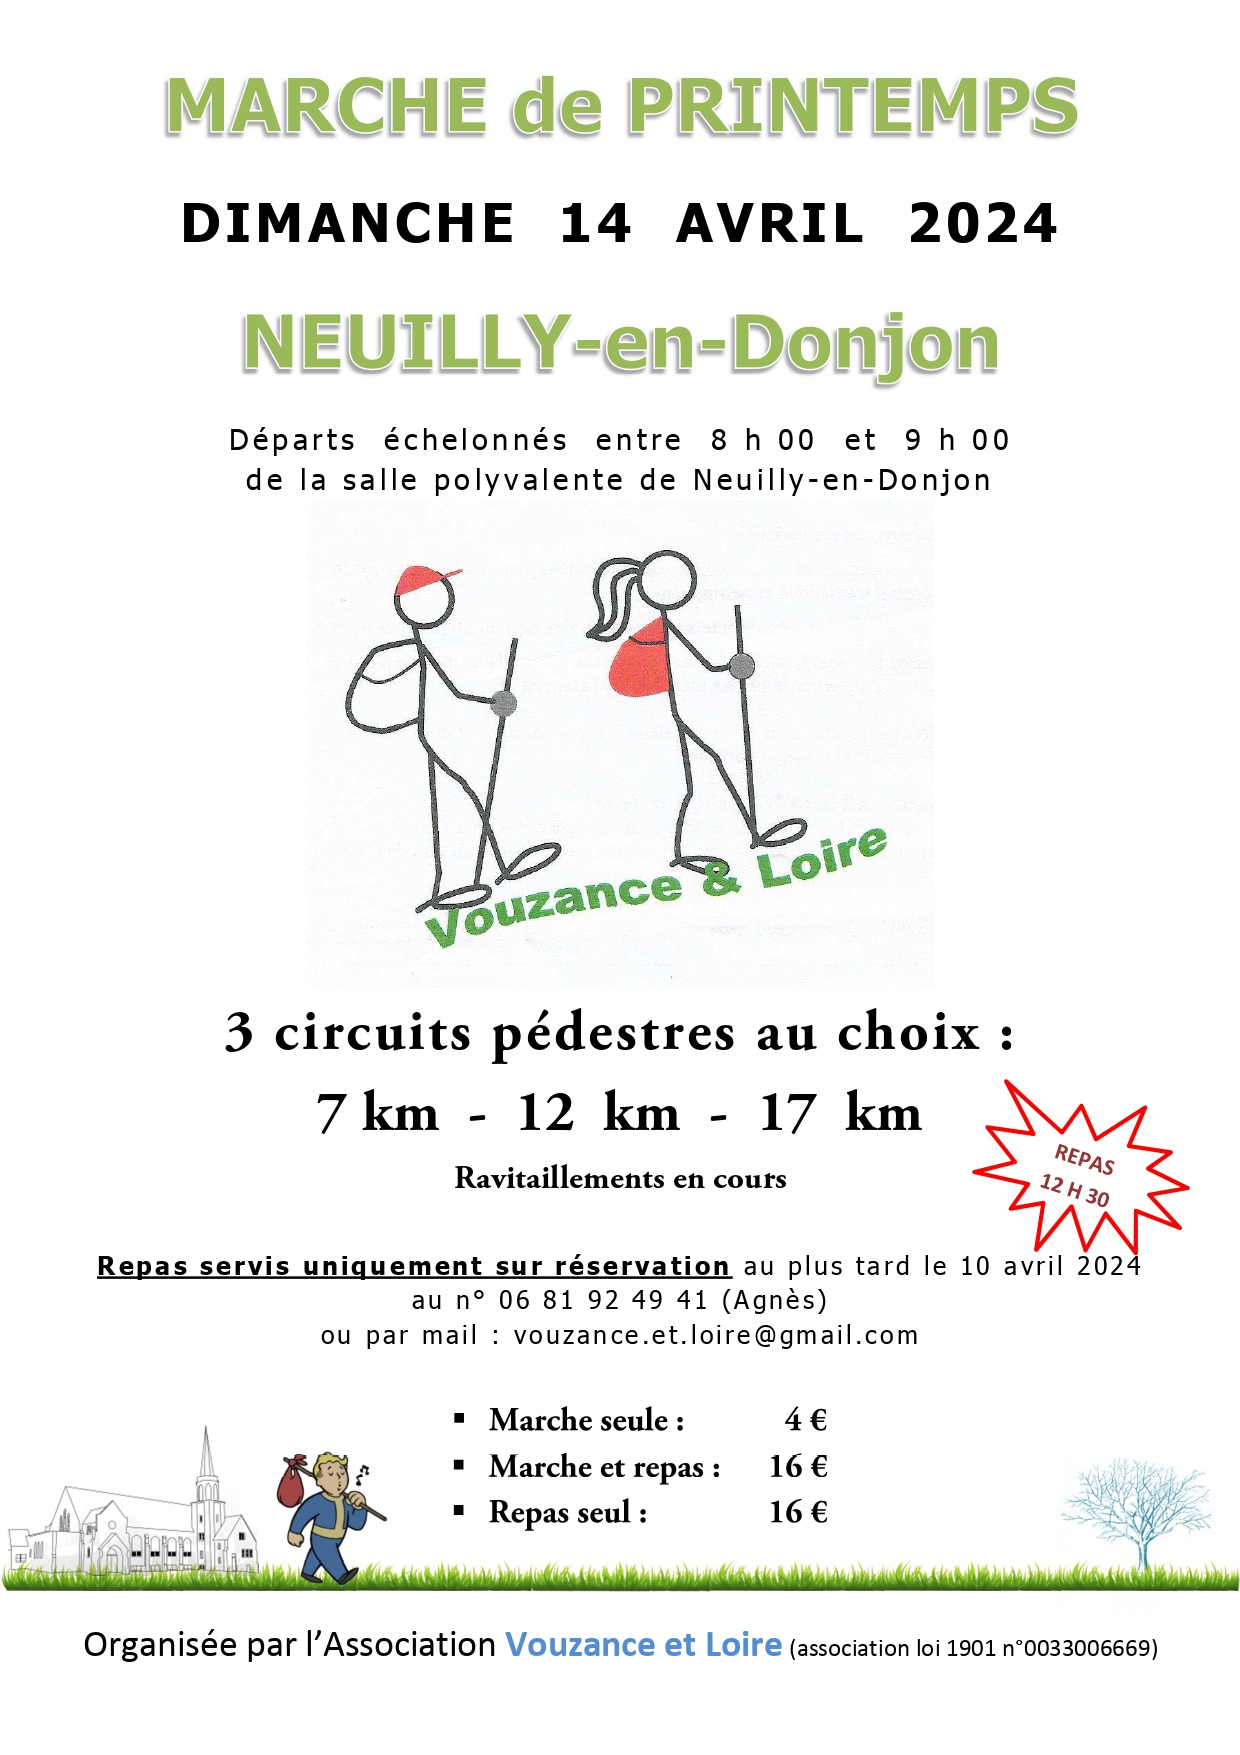 Marche Vouzance & Loire - Neuilly - dimanche 14 avril